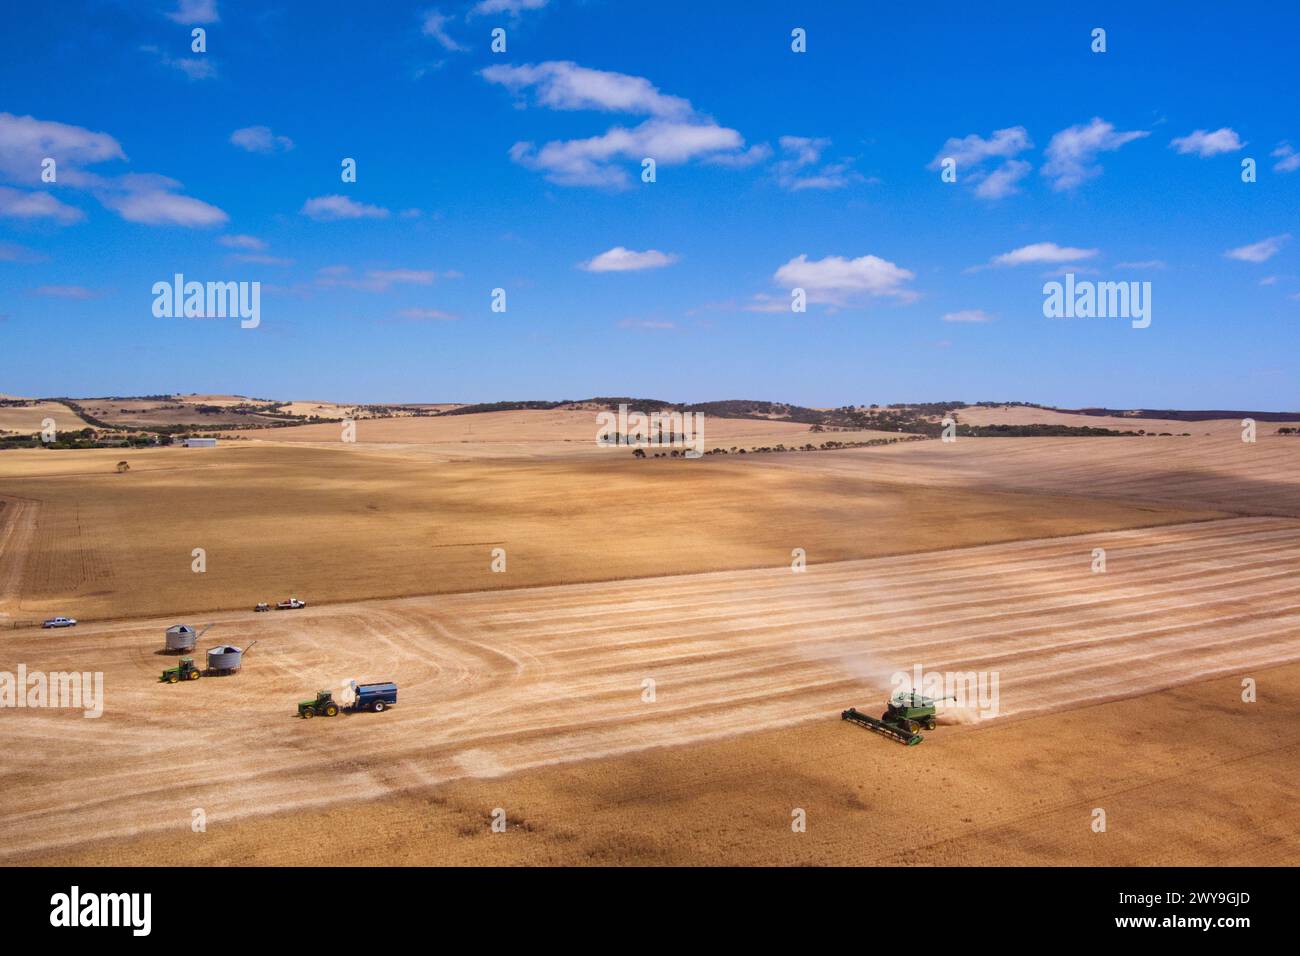 La mietitrebbiatrice aerea che raccoglie un campo di grano vicino a Tumby Bay Eyre Peninsula, Australia meridionale Foto Stock